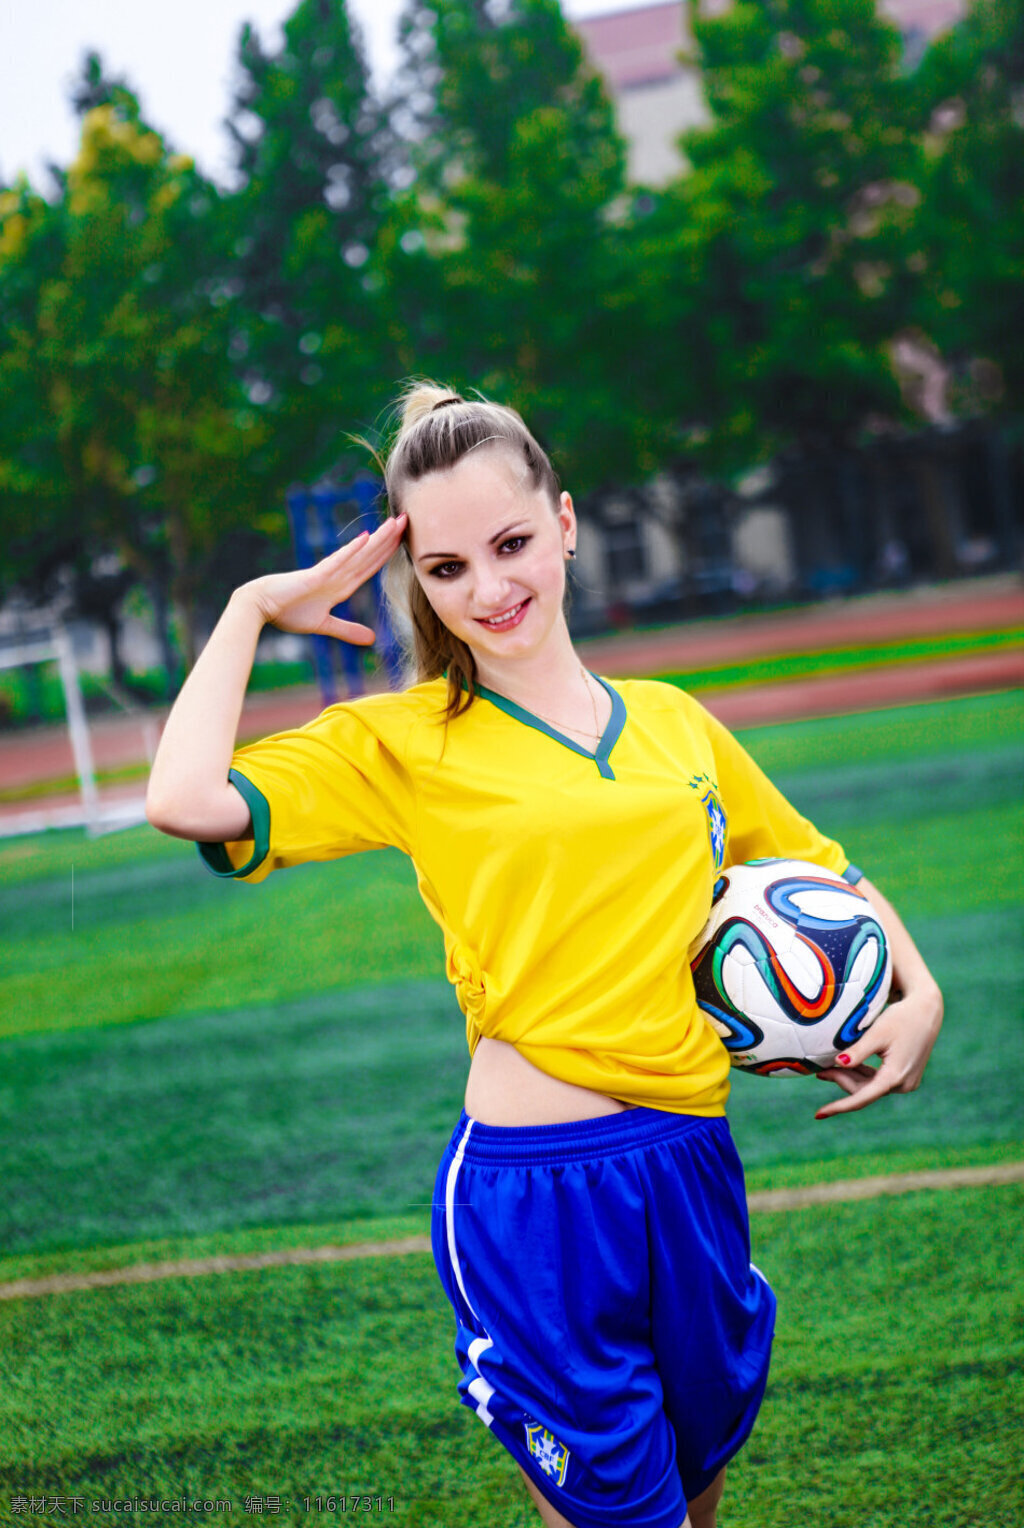 巴西 世界杯 美女 世界杯美女 巴西世界杯 足球宝贝 足球